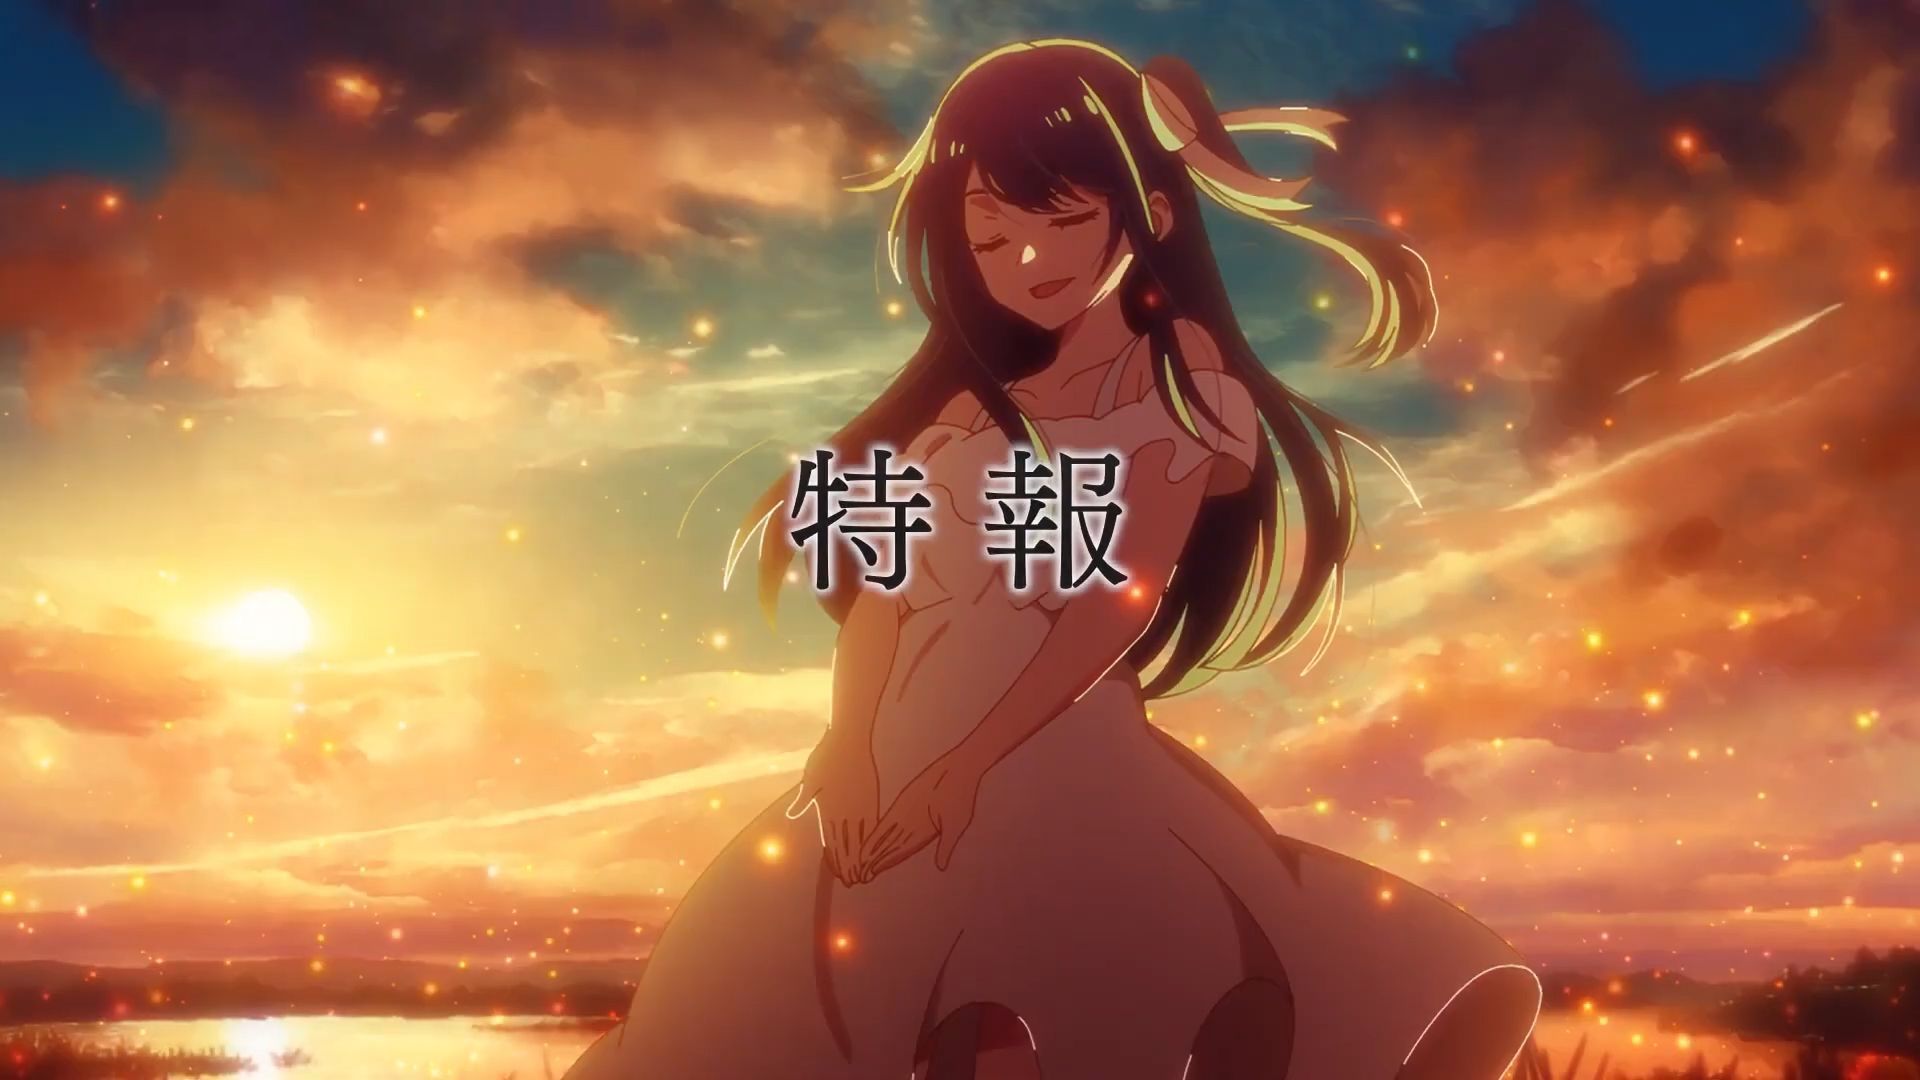 Assistir Oshi no Ko (My Star) Episódio 9 Legendado - Animex HD